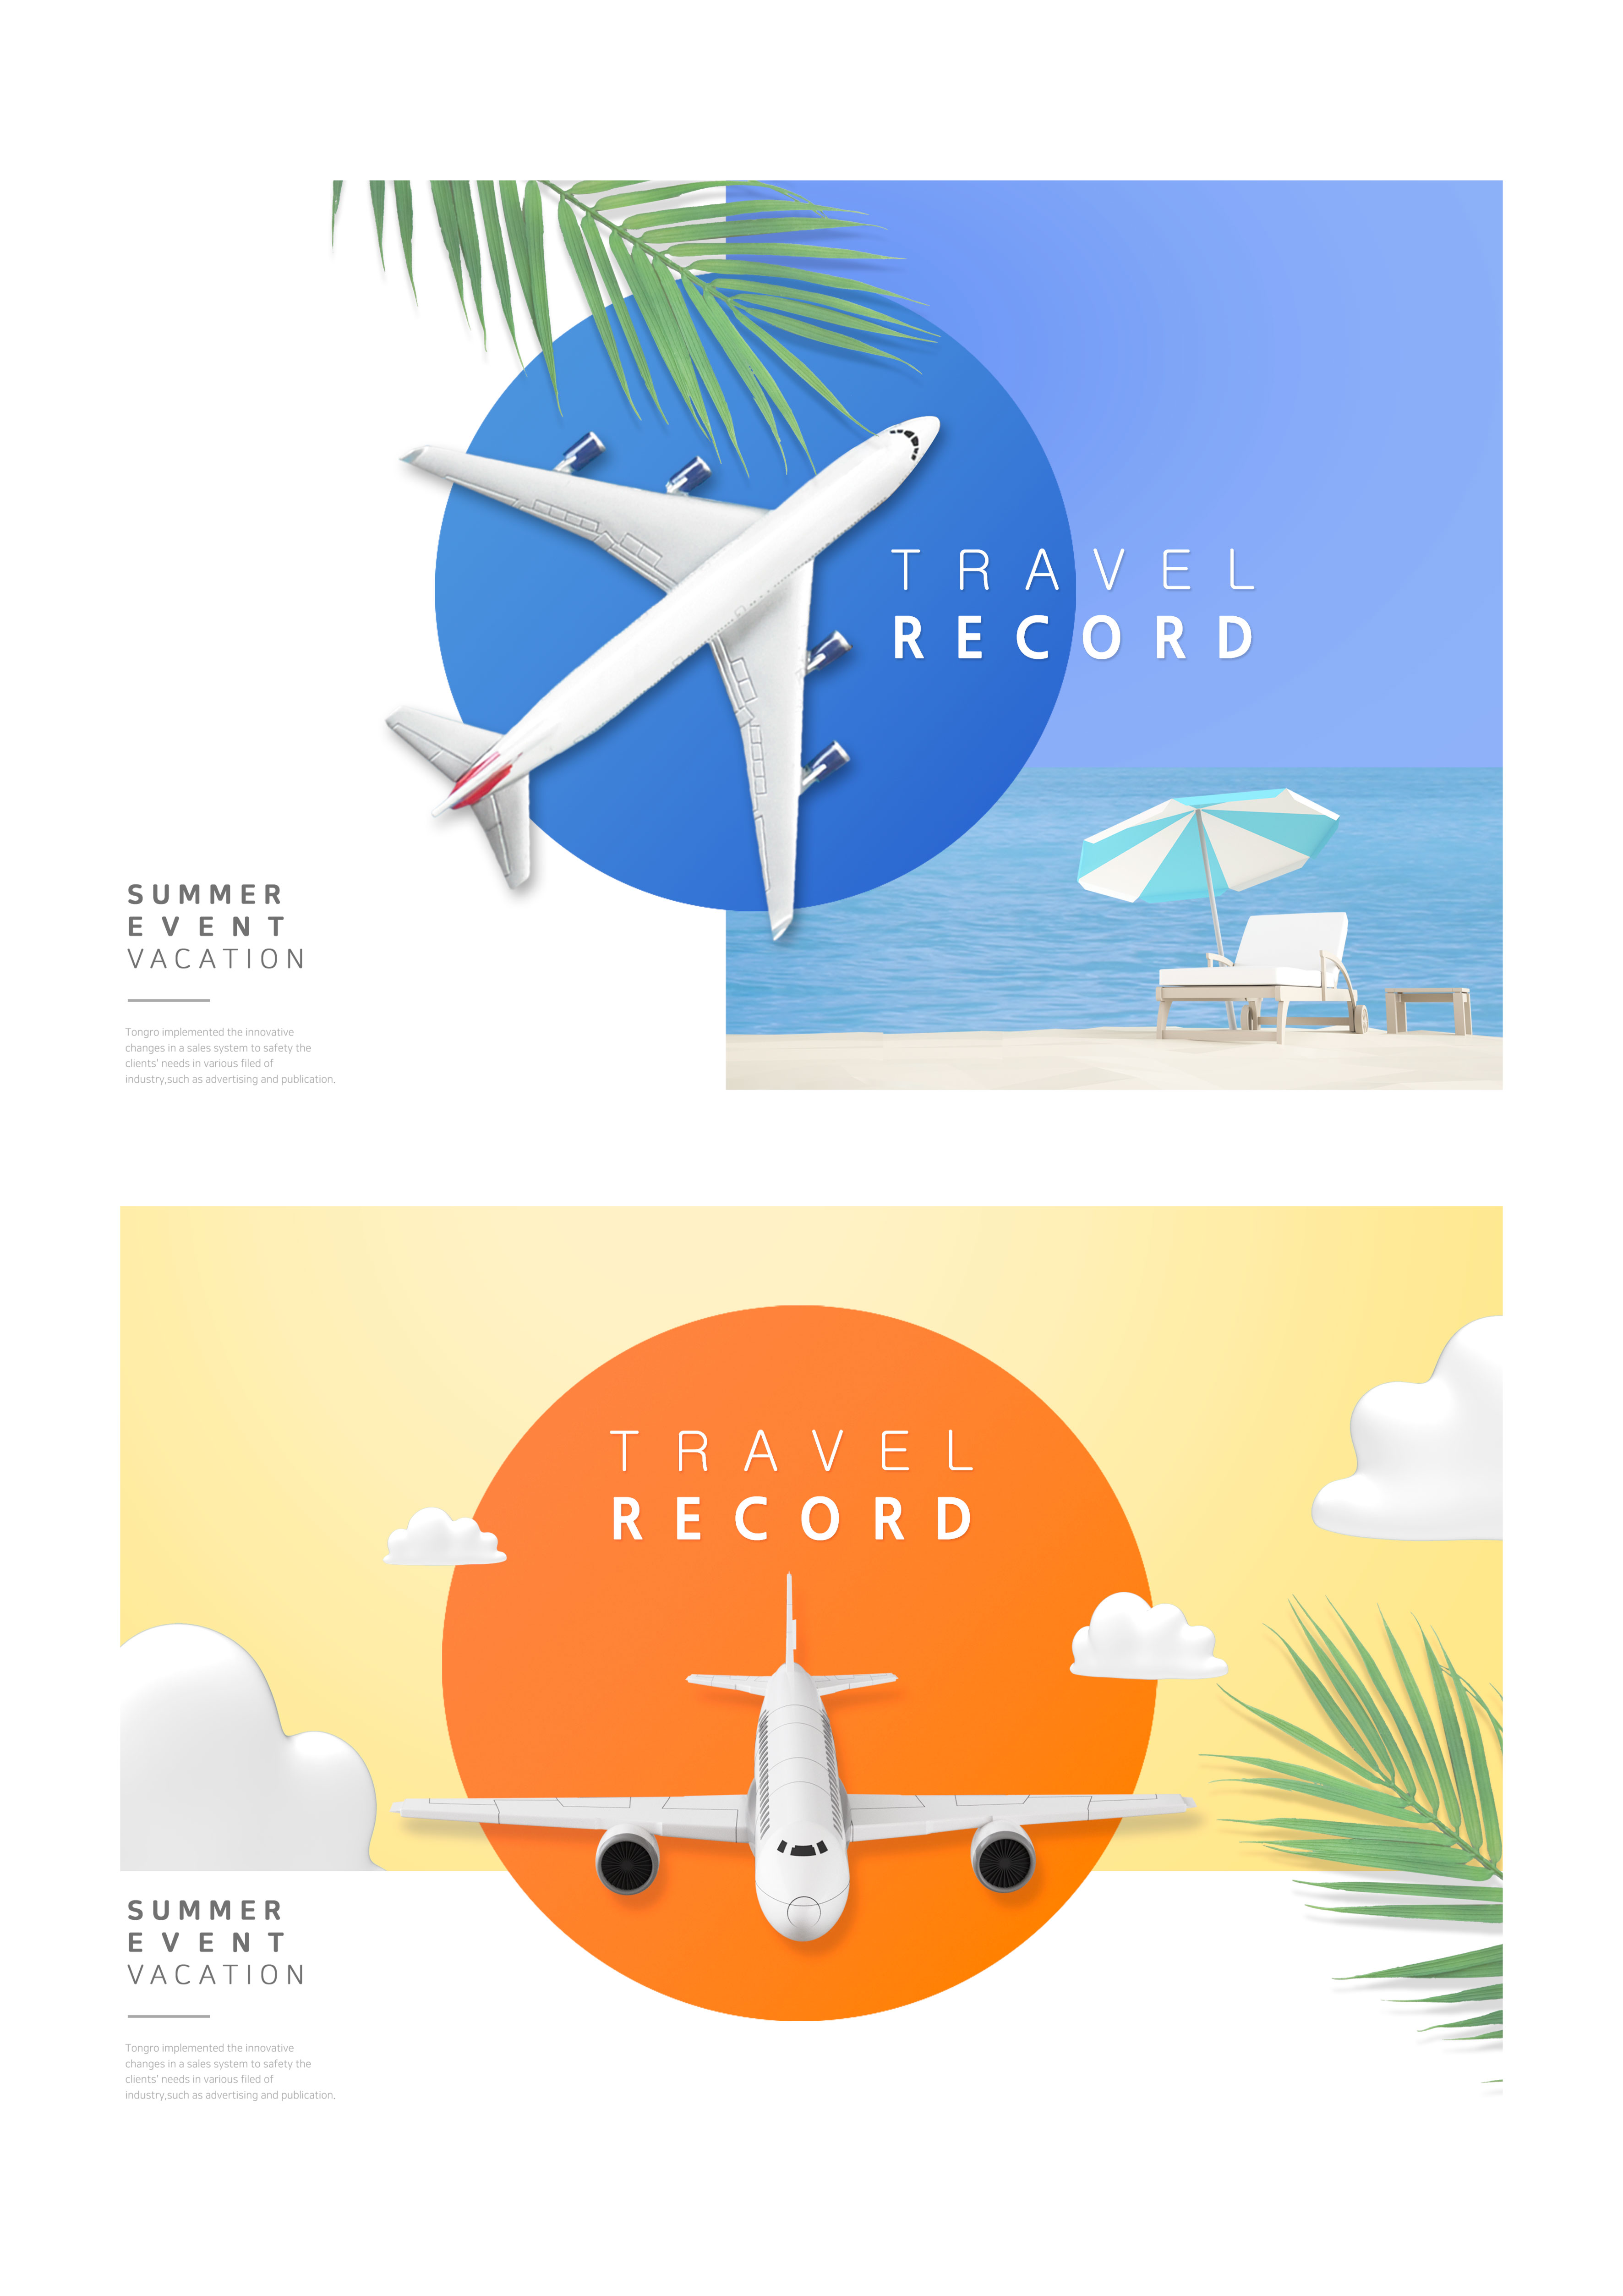 简约设计风格暑假旅行航空广告Banner模板插图